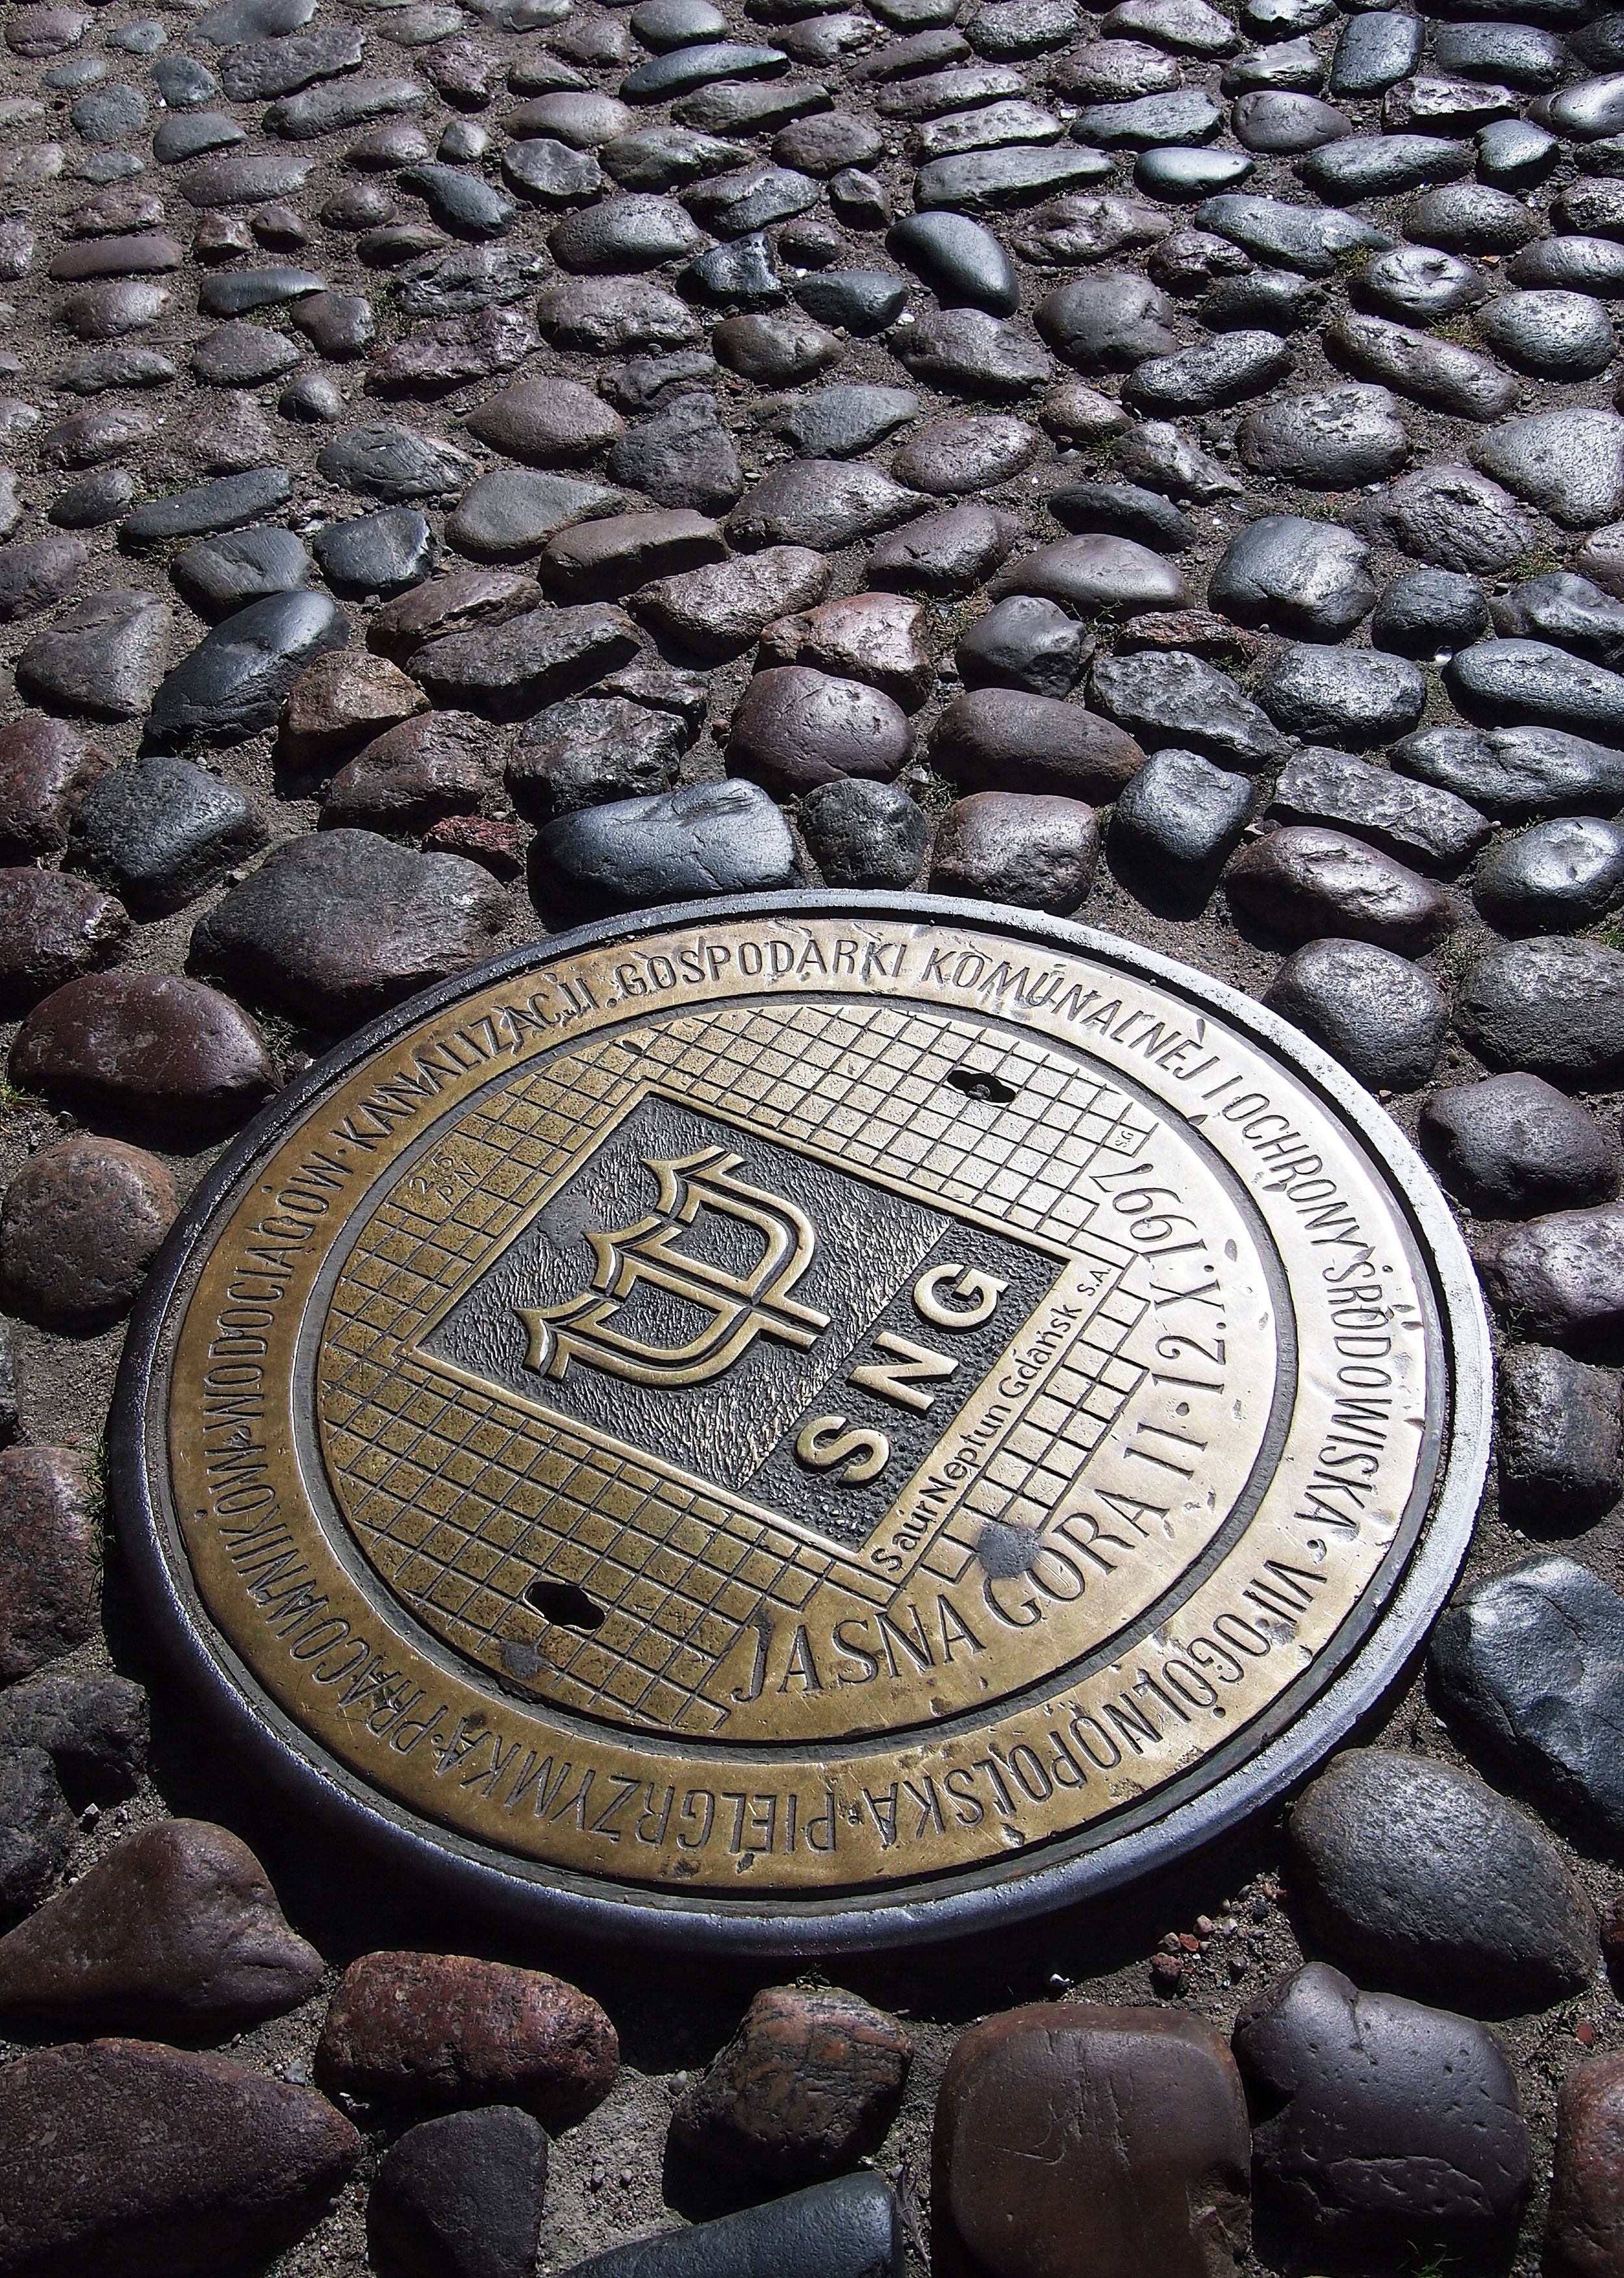    Gdańsk  : Public Works Pilgrimage Plaque (manhole cover)   